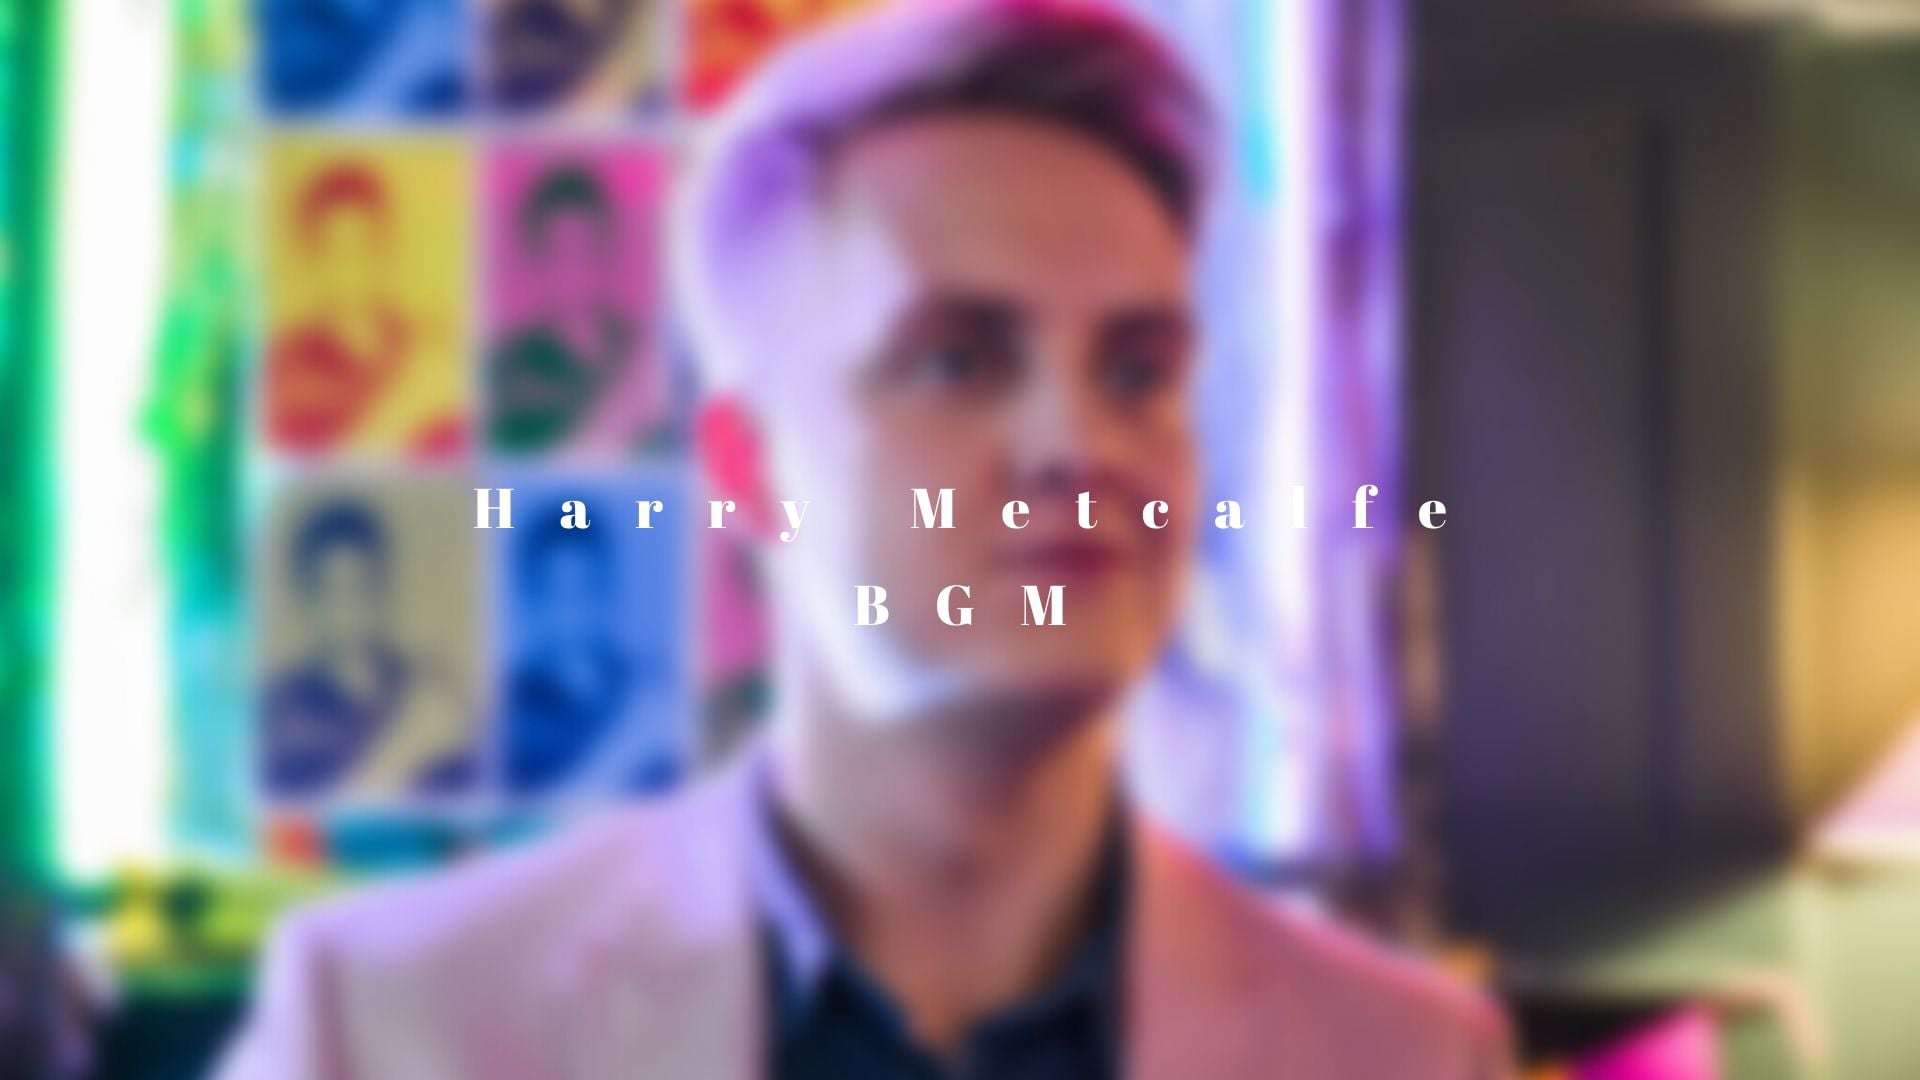 Harry Metcalfe: BGM